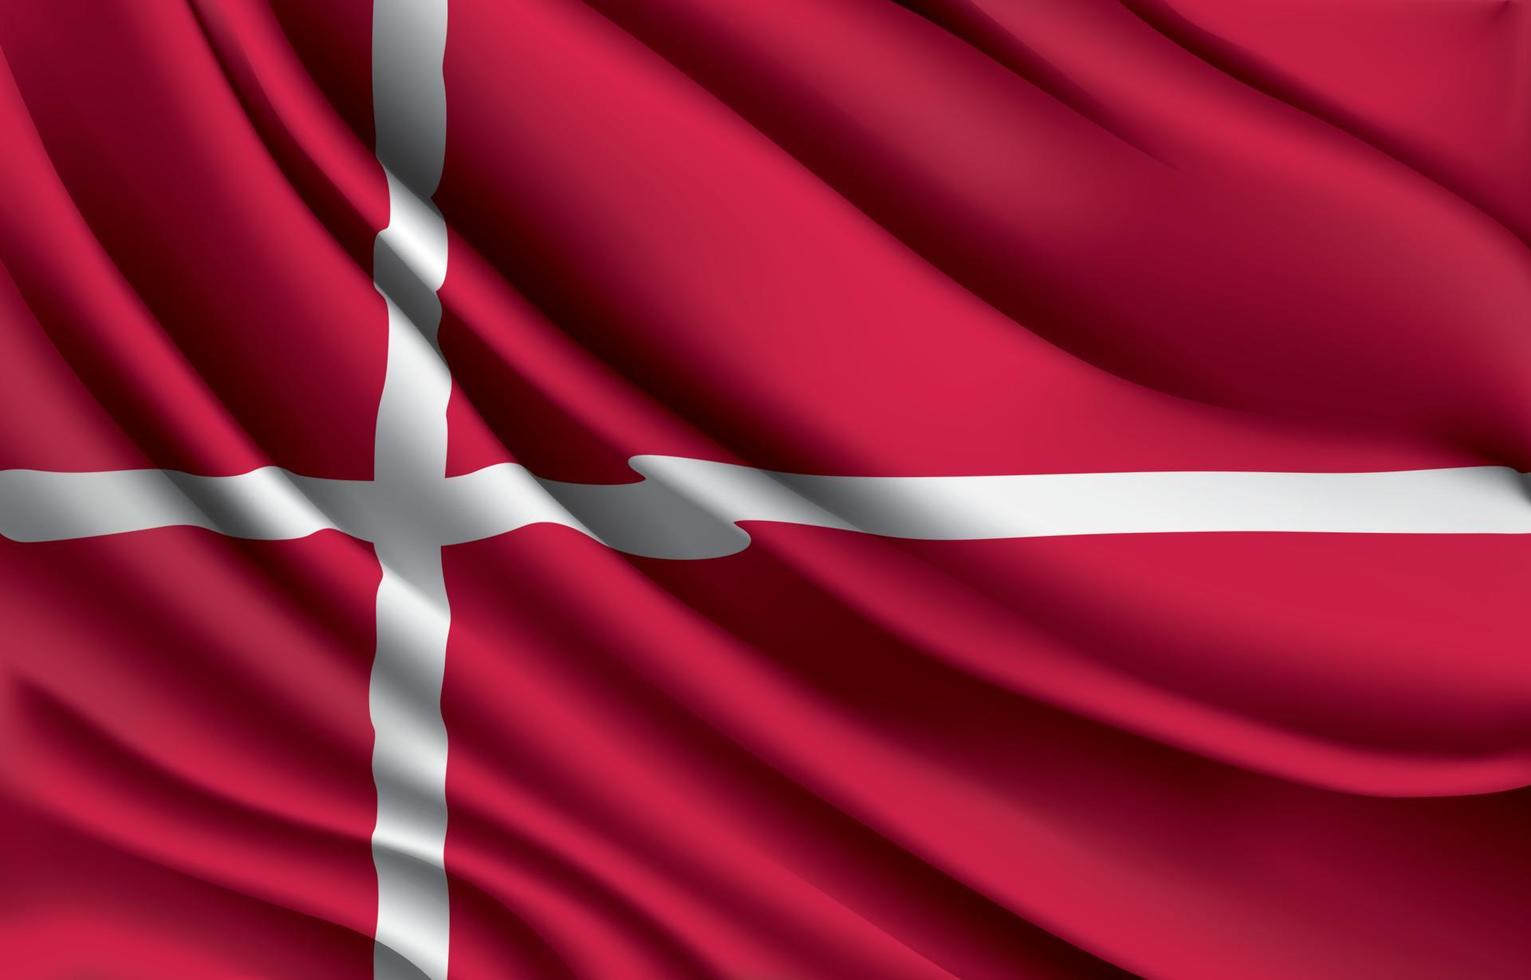 drapeau national du danemark agitant une illustration vectorielle réaliste vecteur